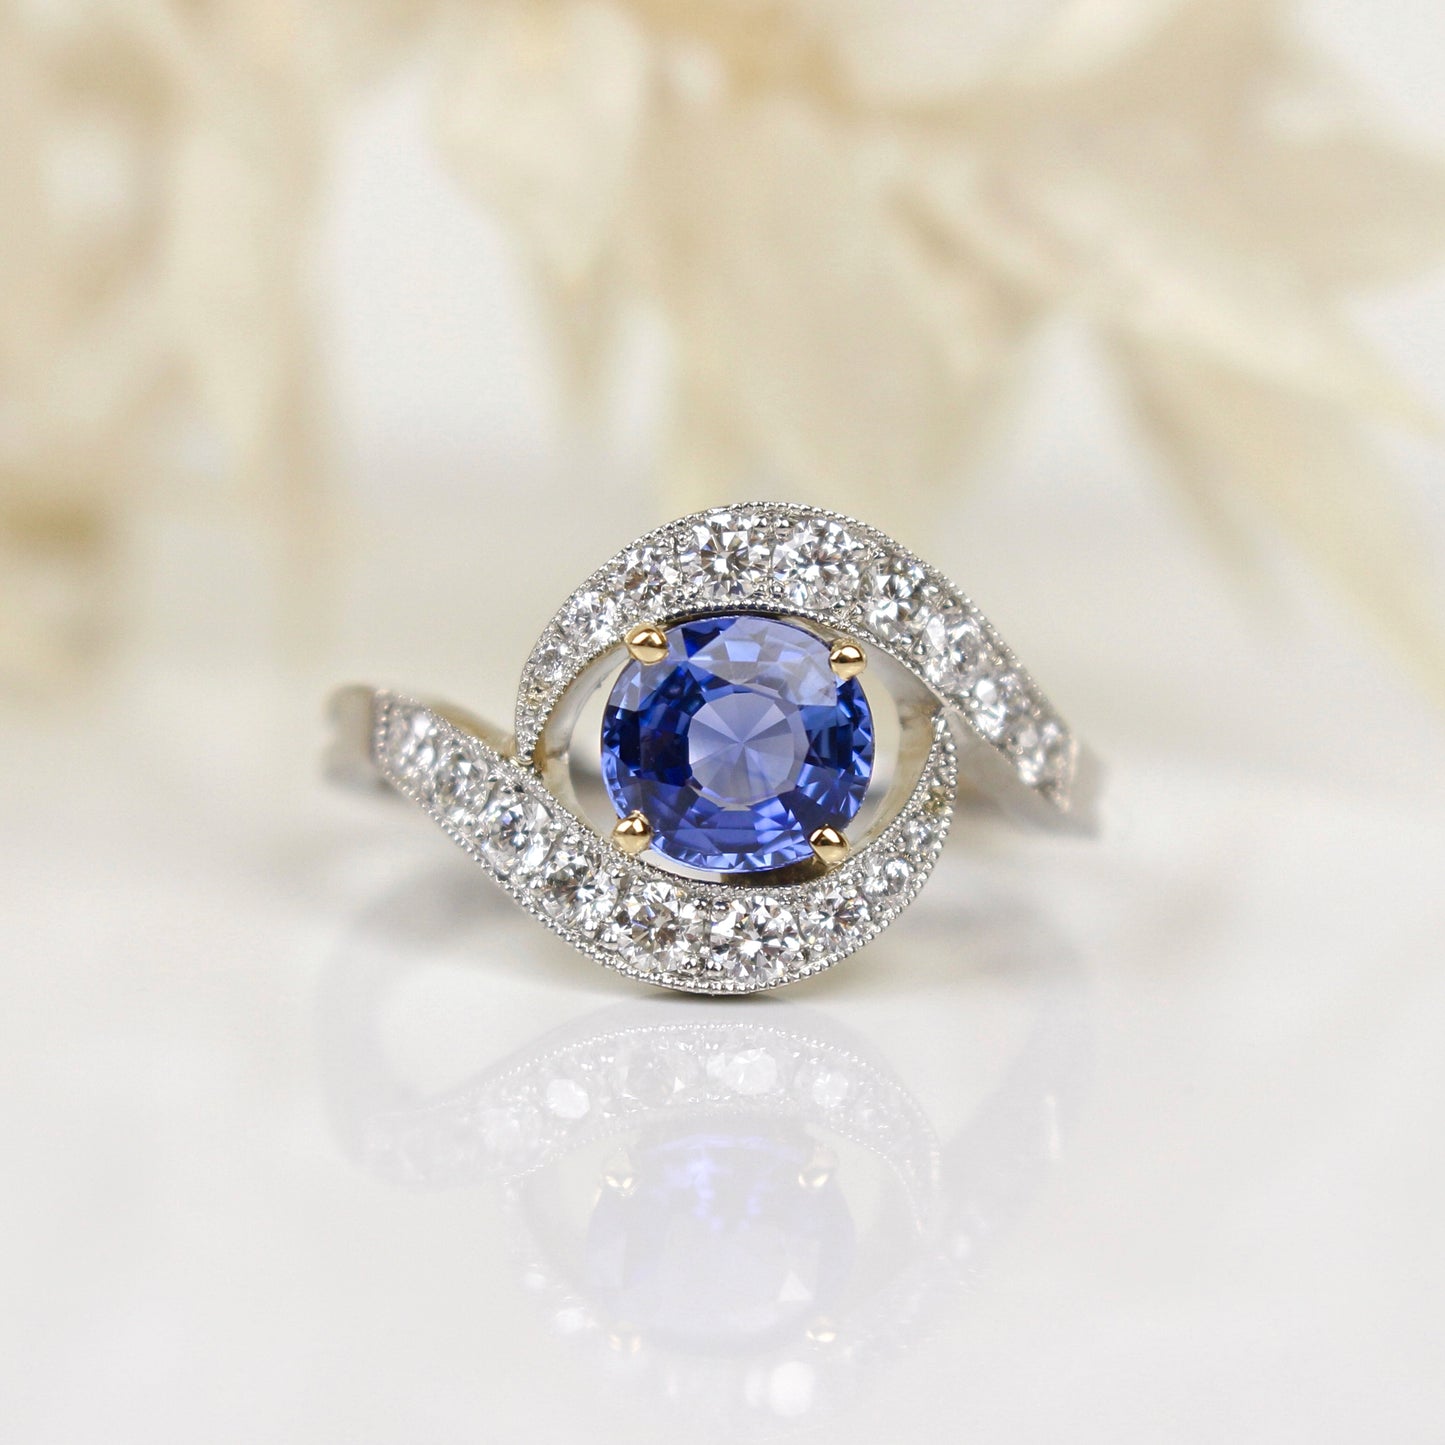 Bague toubillon avec au centre un saphir bleu taille ovale/volutes en diamants sertis grains/monture en platine